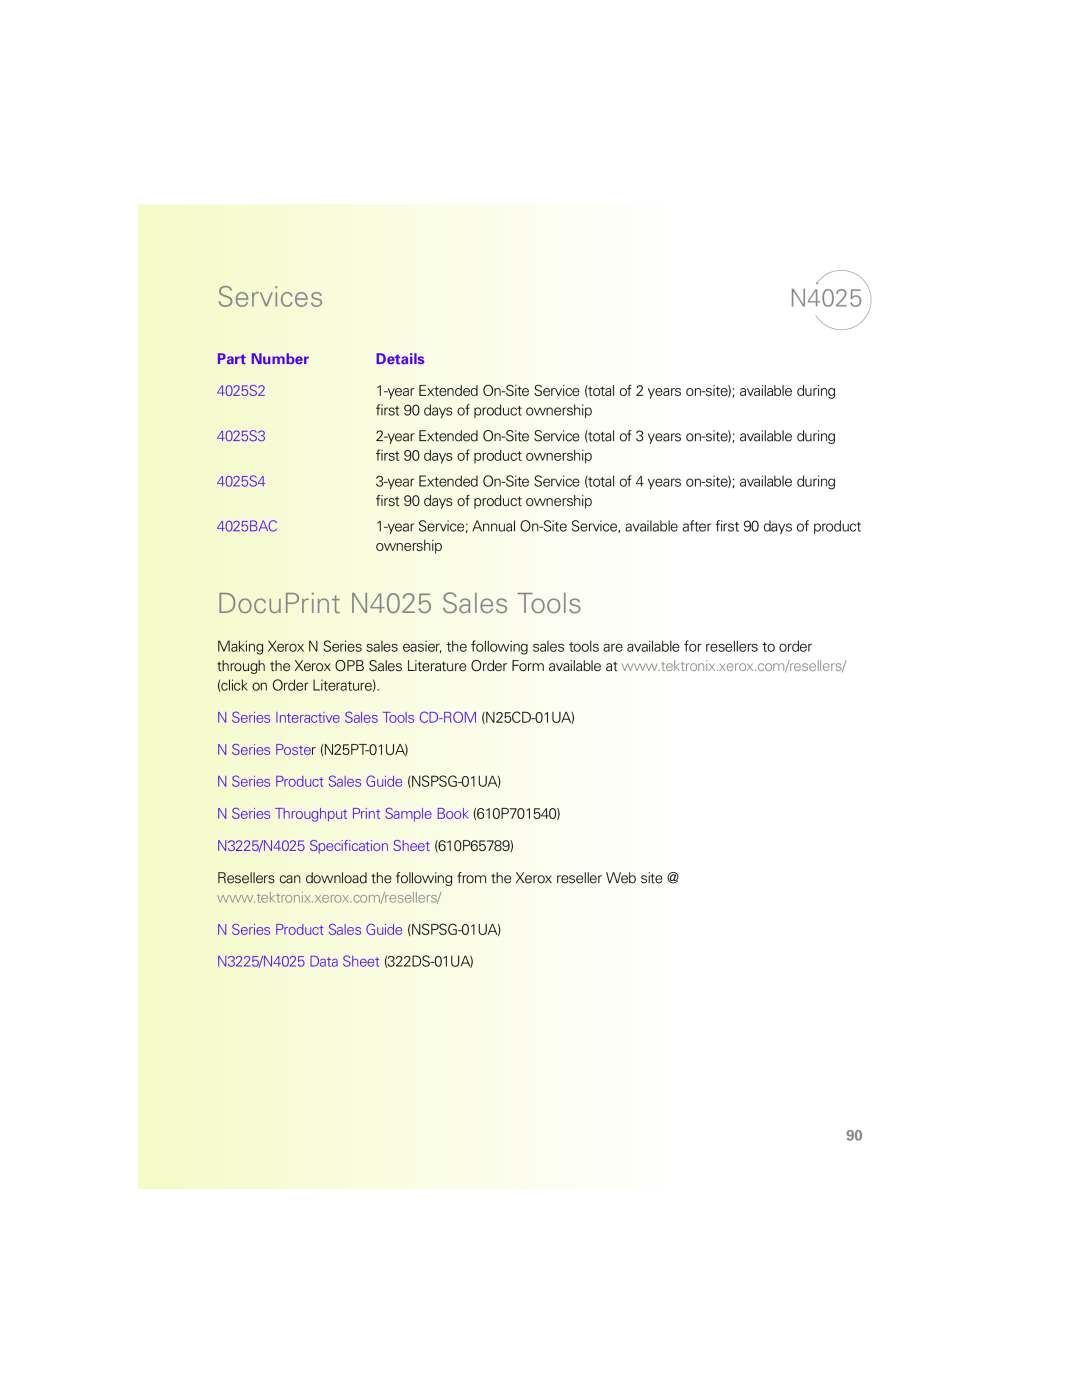 Xerox N Series manual DocuPrint N4025 Sales Tools, Services, Part Number, Details 